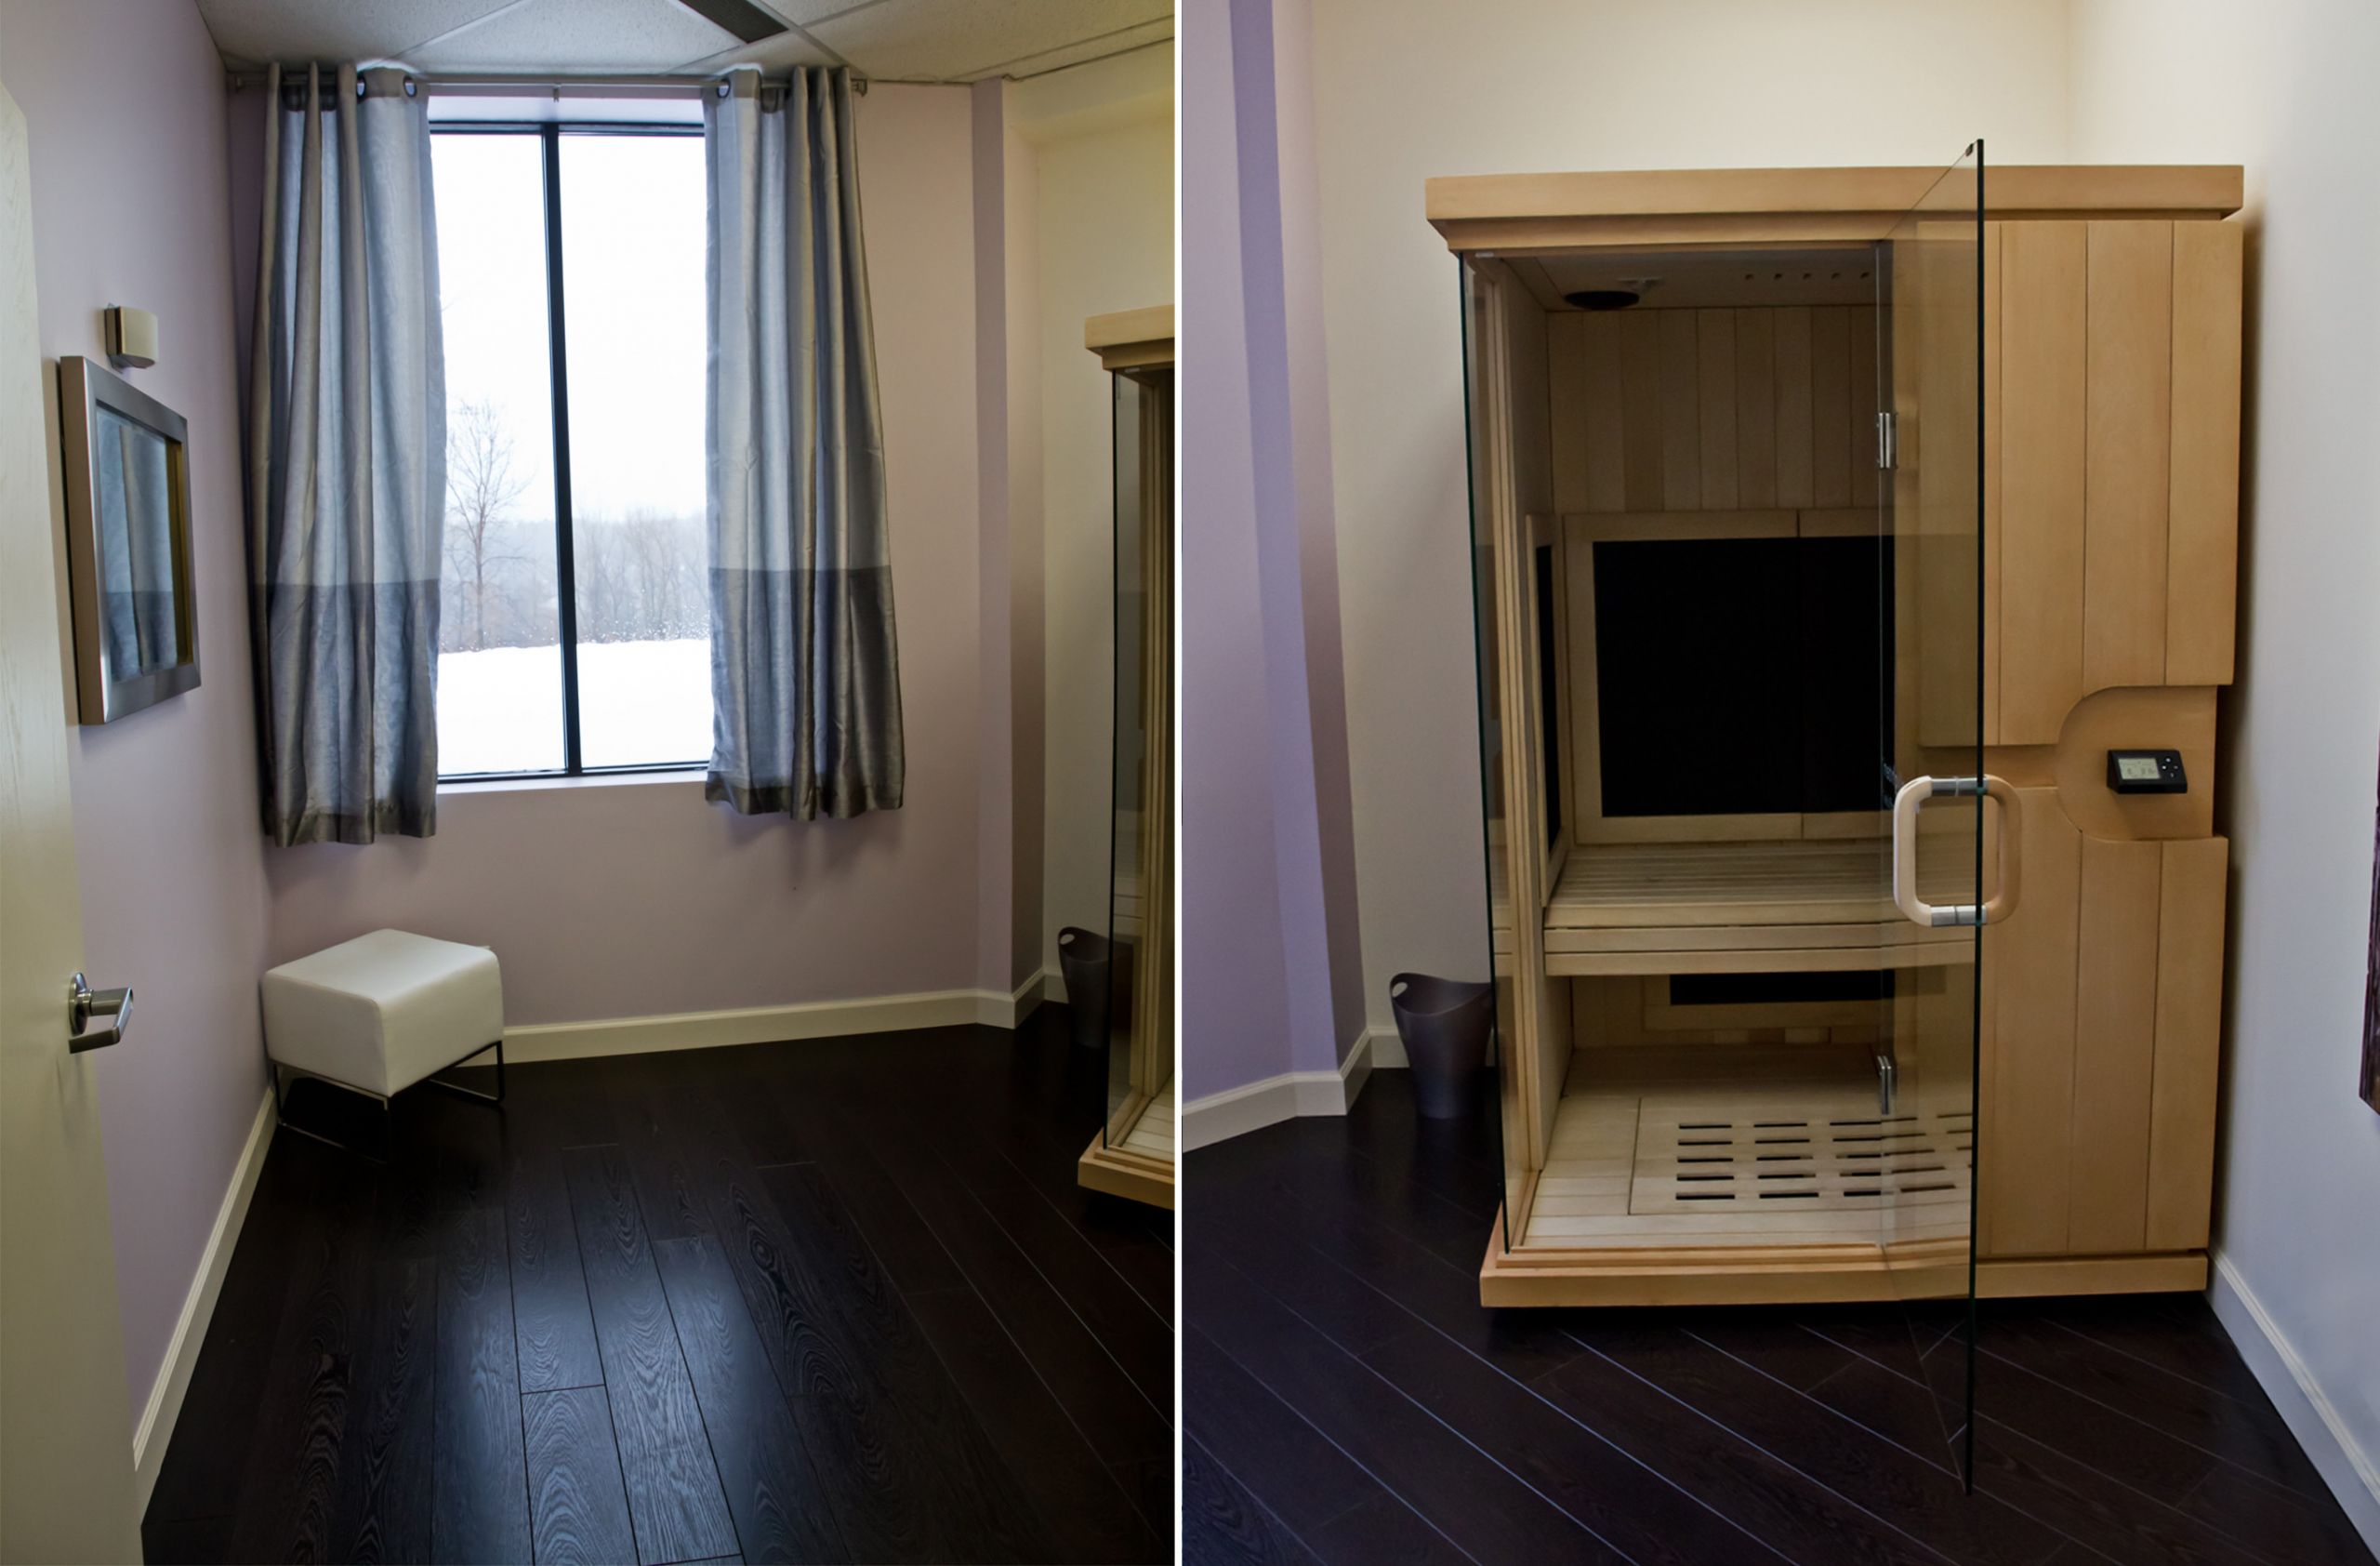 DIY Near Infrared Sauna Plans
 Homemade Near Infrared Sauna Under 100 Homemade Ftempo